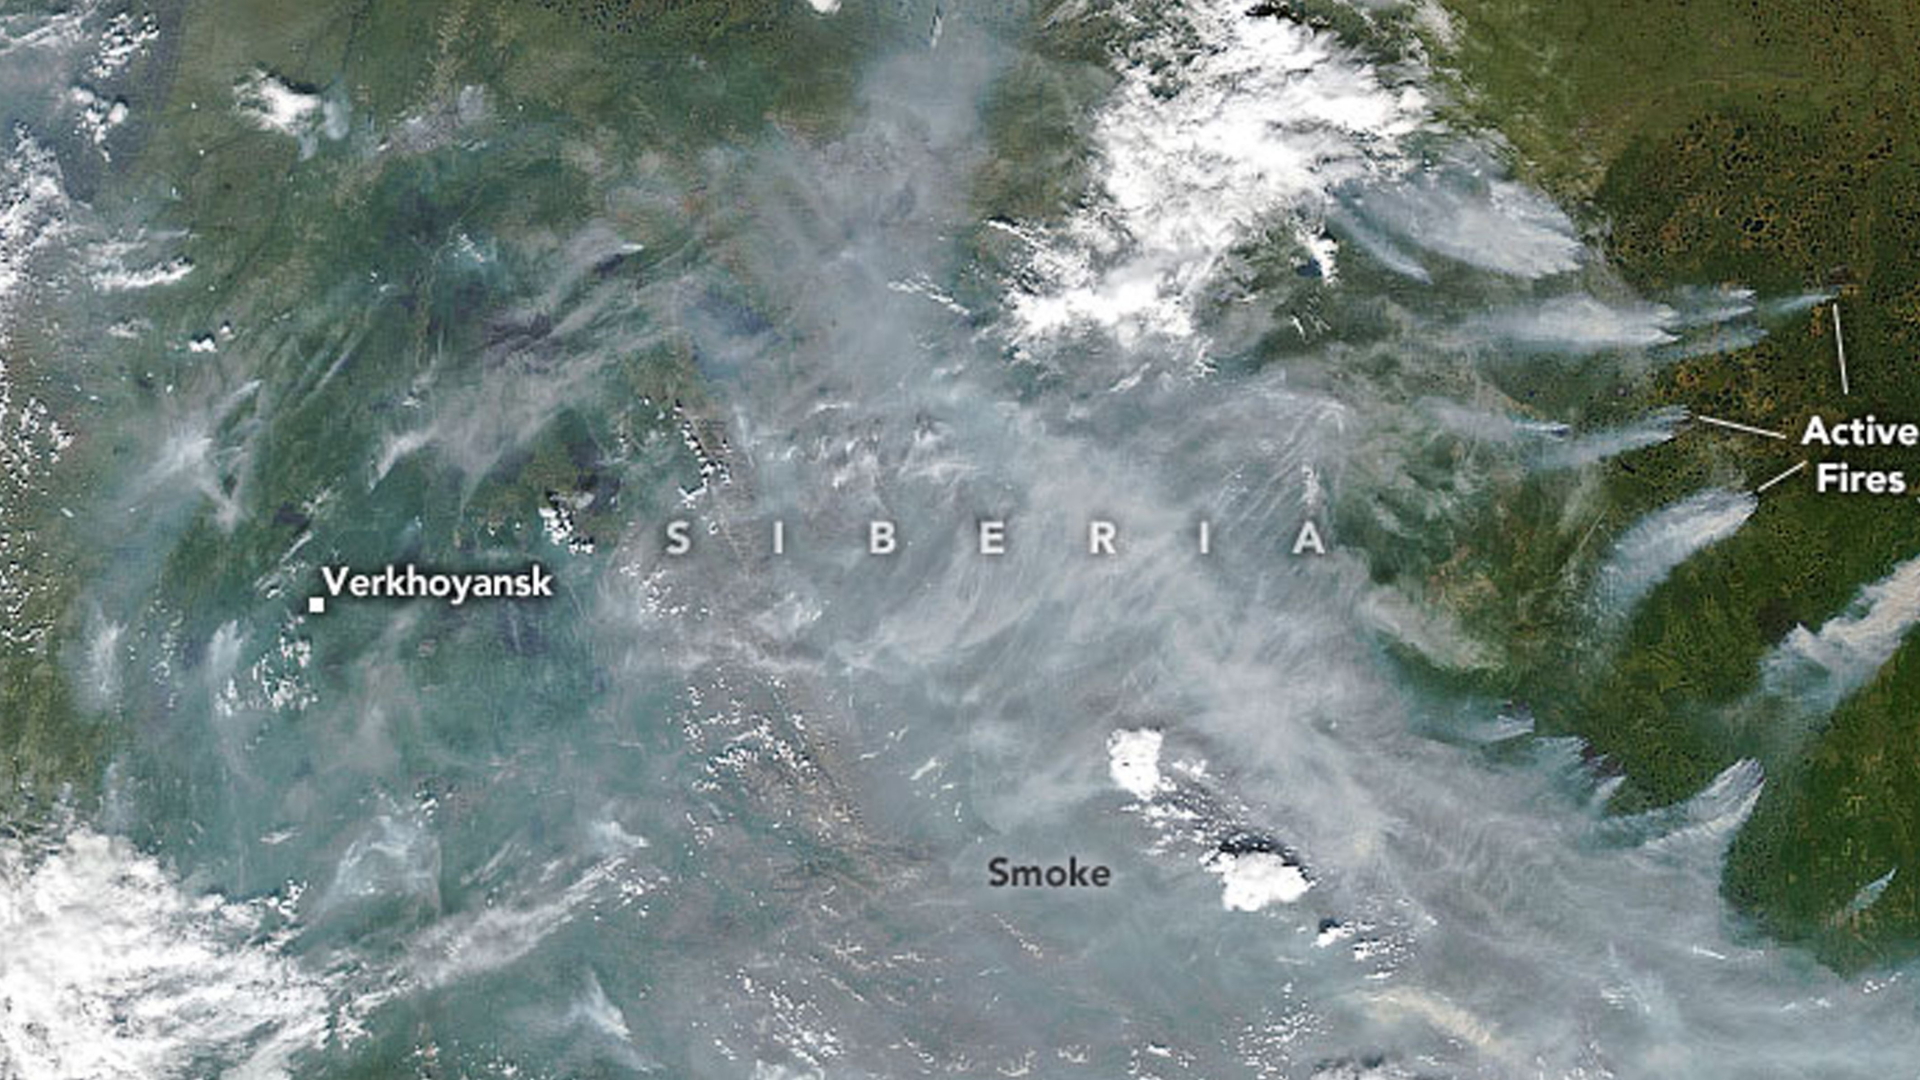 Diese Aufnahme der NASA zeigt die Waldbrände Ende Juni 2020 und ihre Auswirkungen. | NASA HANDOUT/EPA-EFE/Shutterstoc